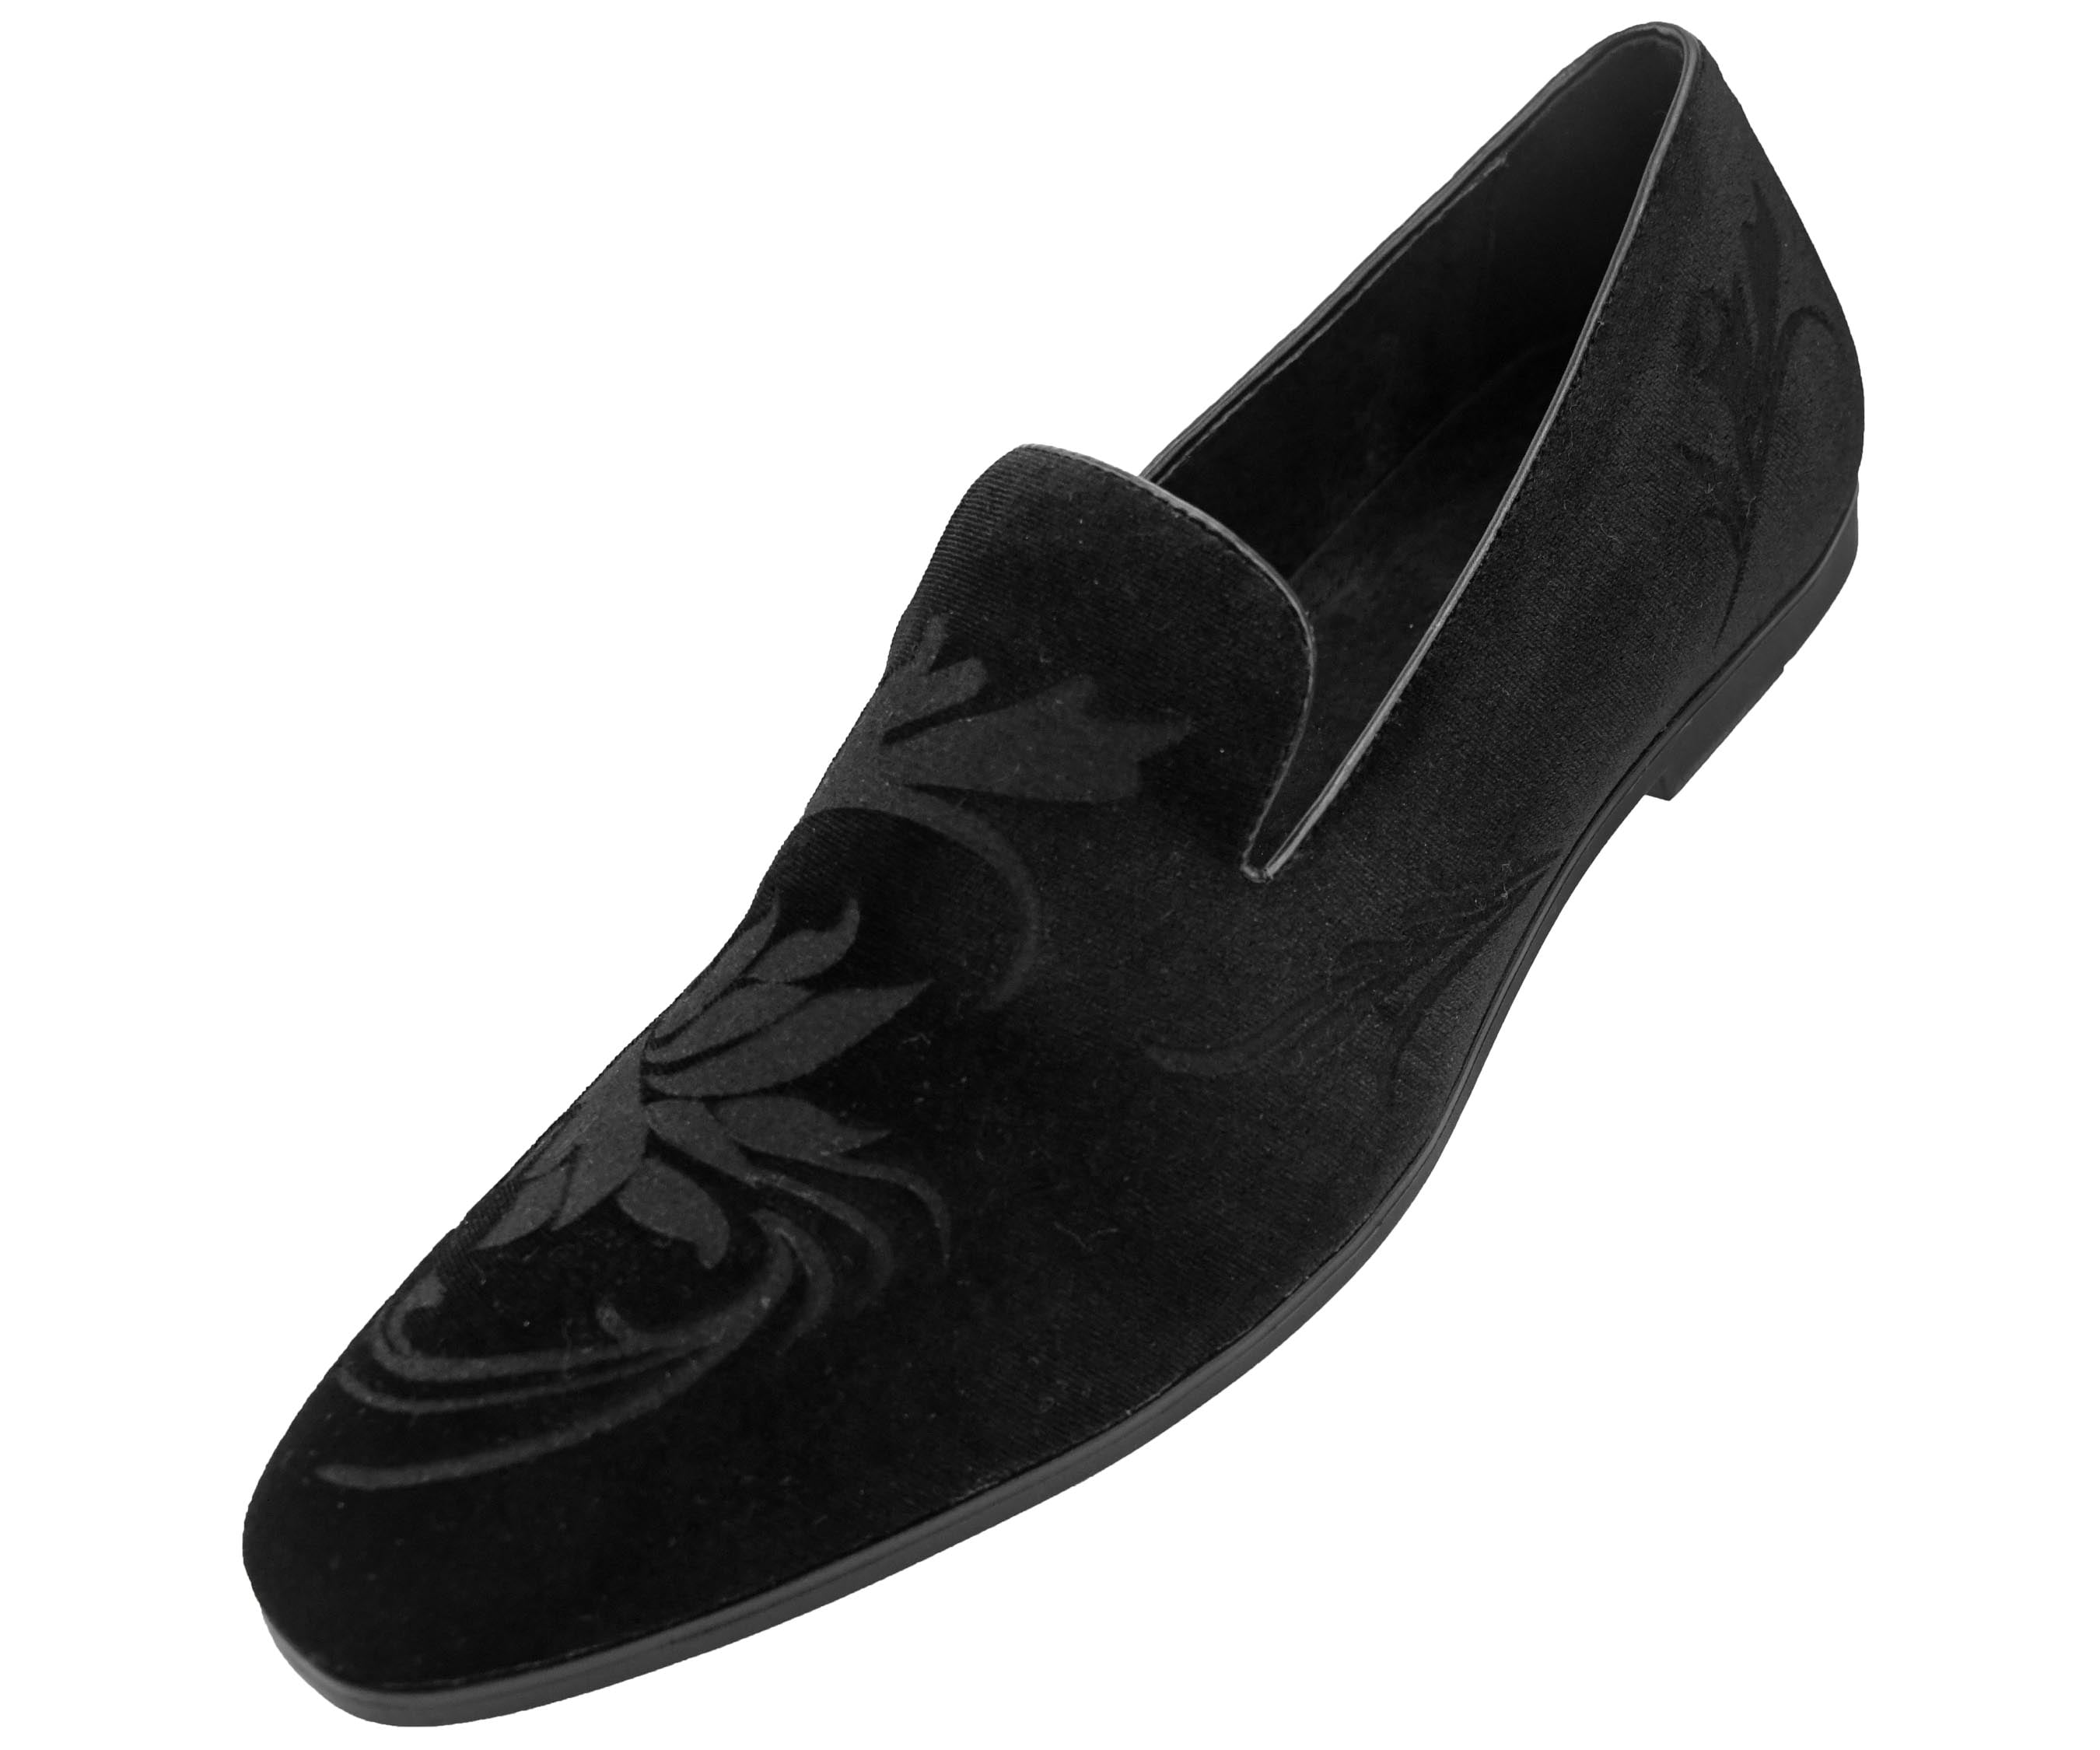 New Amali Men's Dress Sandals Black Cognac Faux Leather with Buckle 